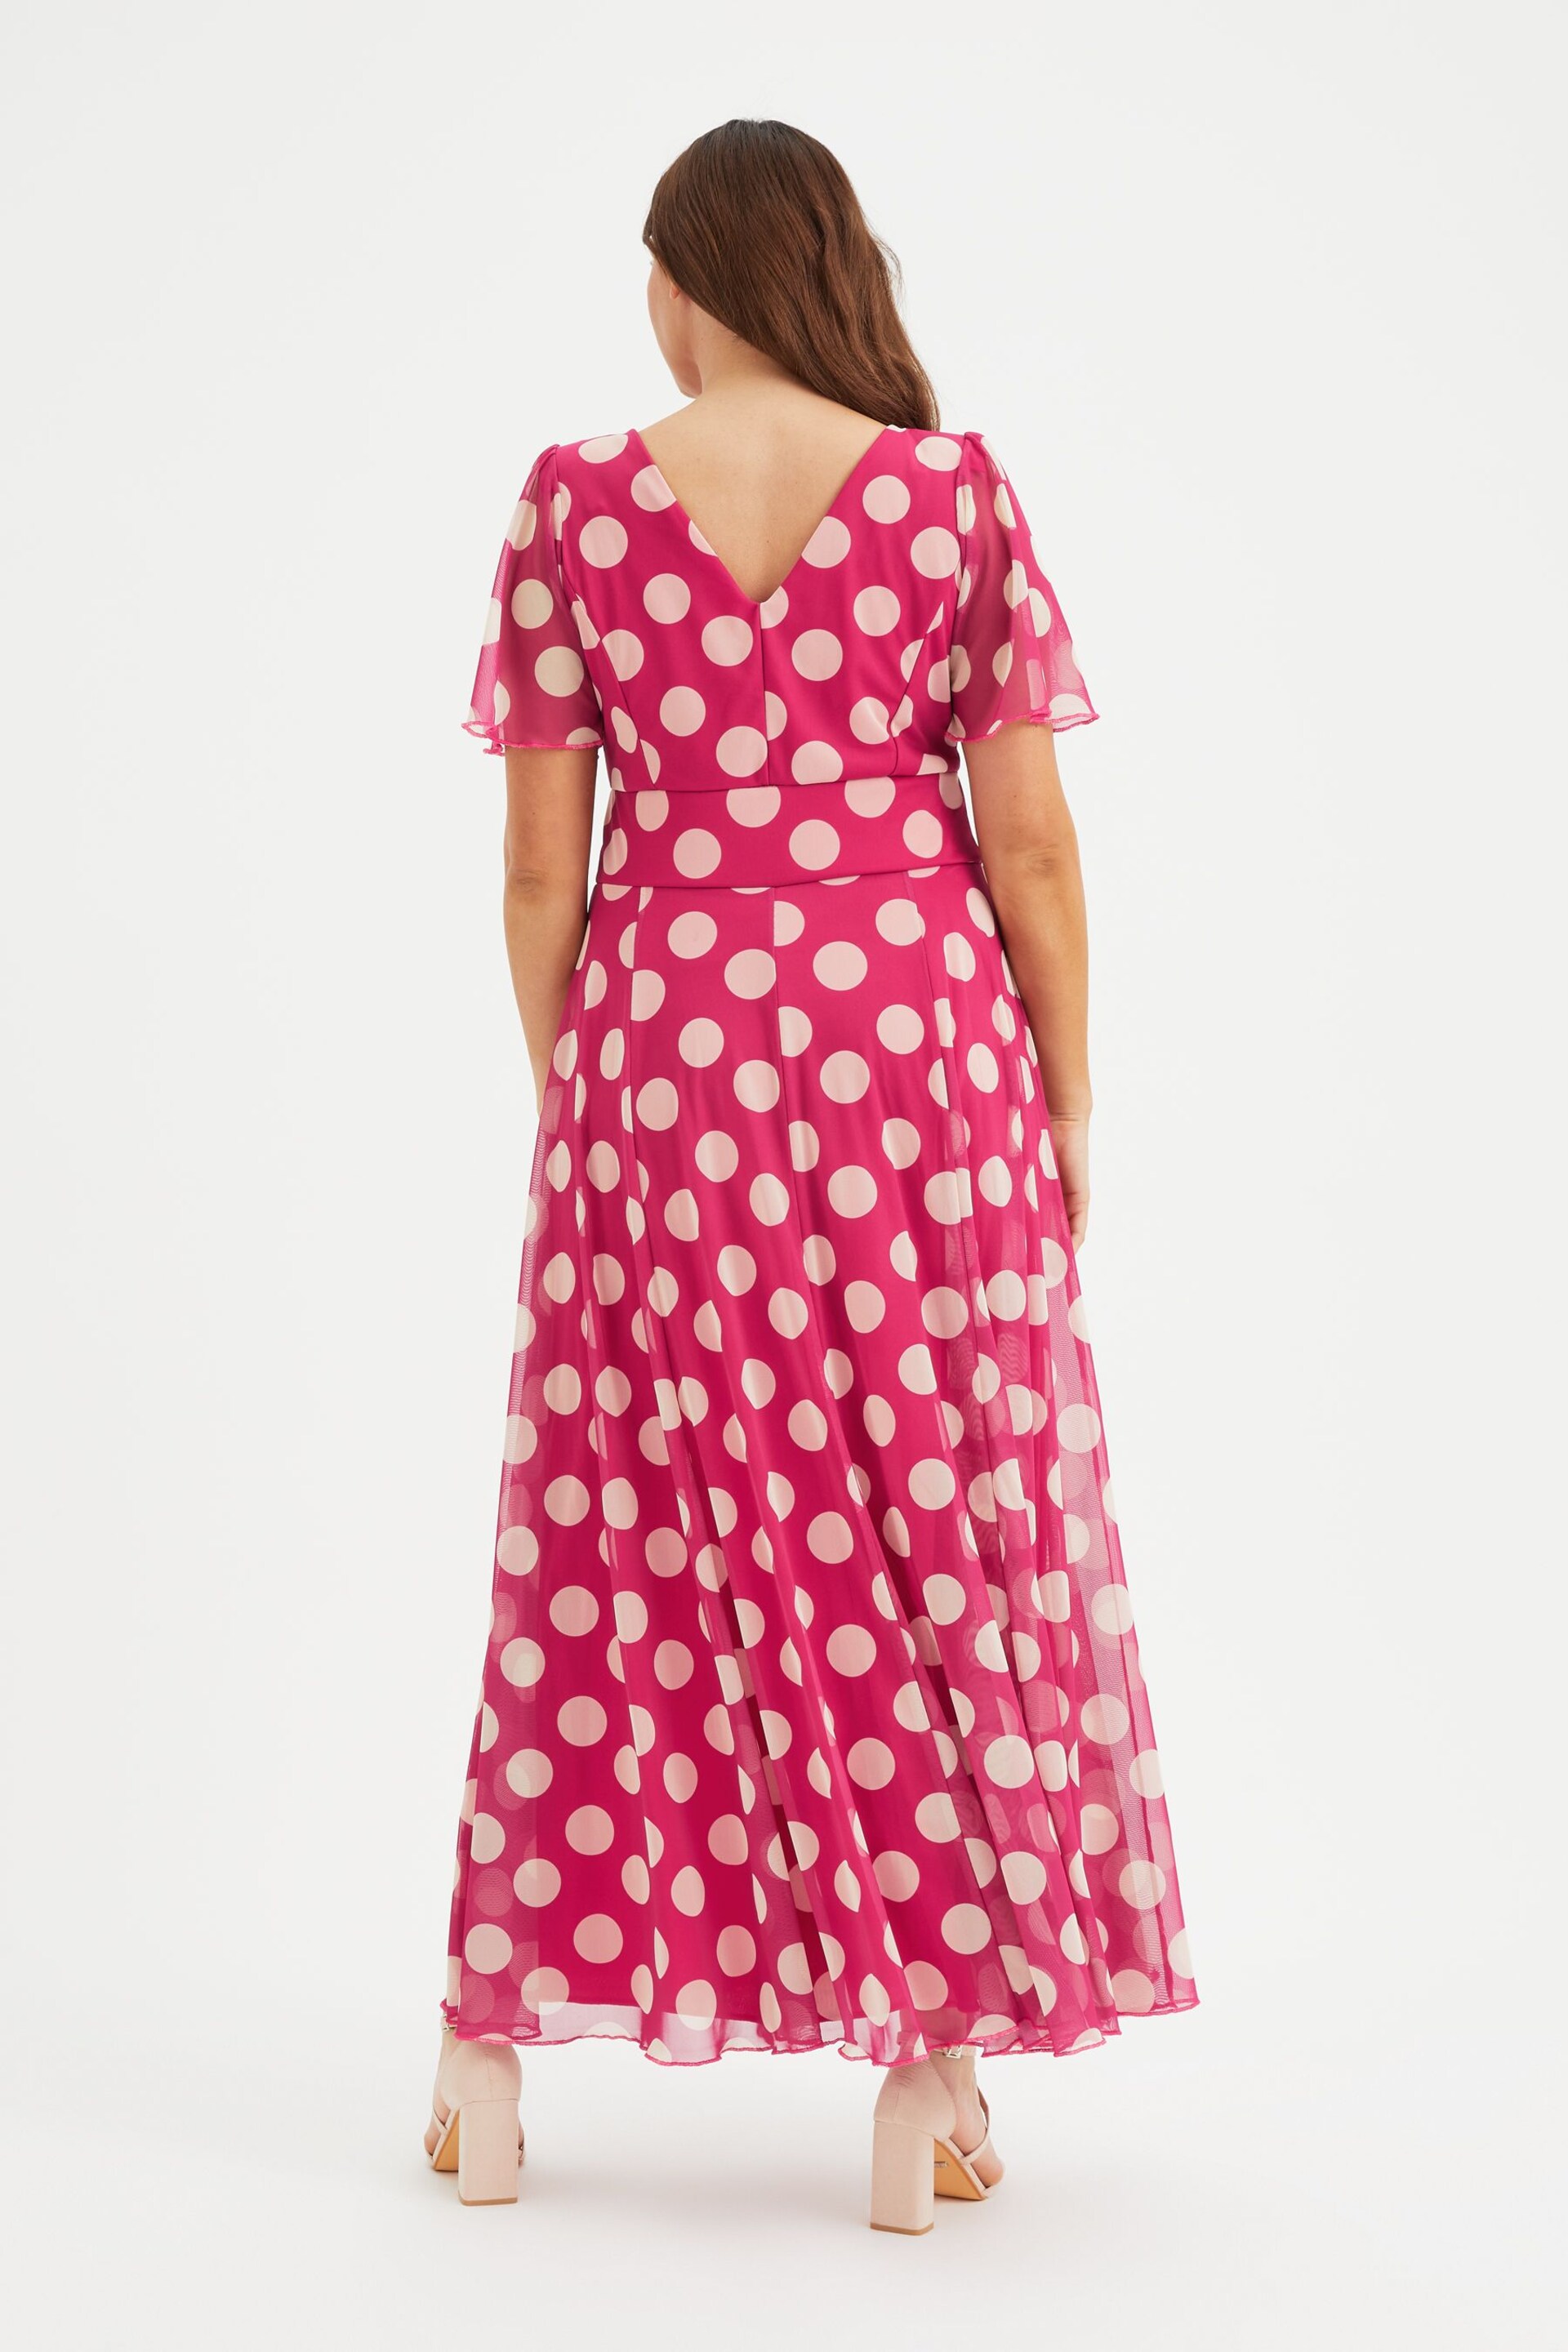 Scarlett & Jo Pink Isabelle Angel Sleeve Maxi Dress - Image 4 of 5